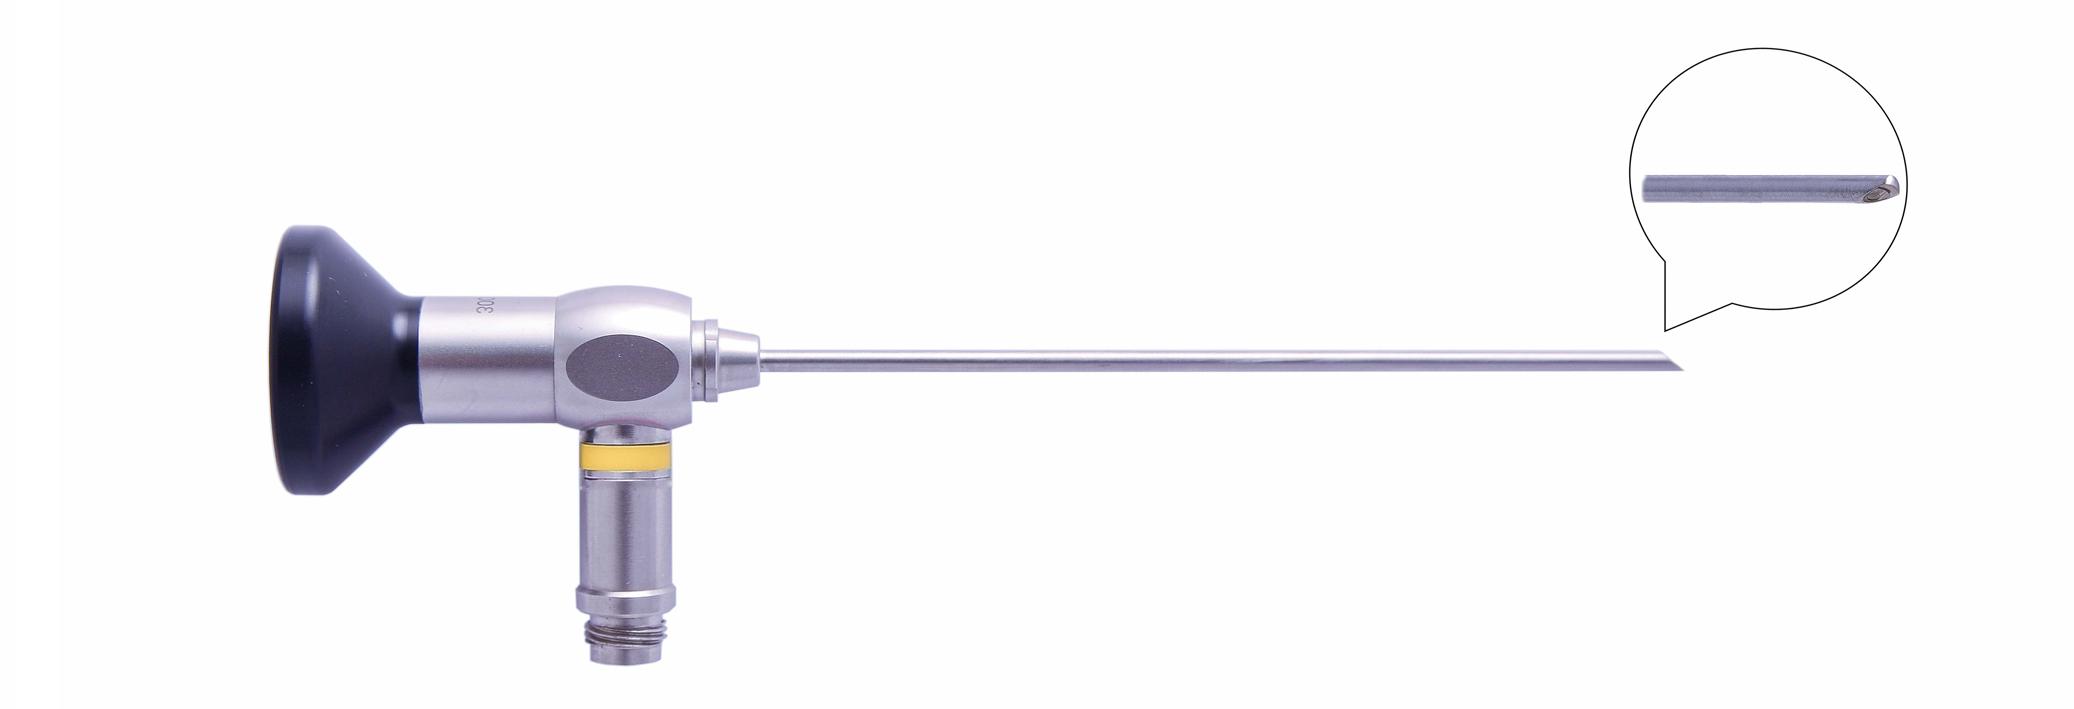 Трубка оптическая (артроскопическая, риноскопическая) ТОАР-007-O диам. 2.7 мм, с углом наблюдения 70 гр.